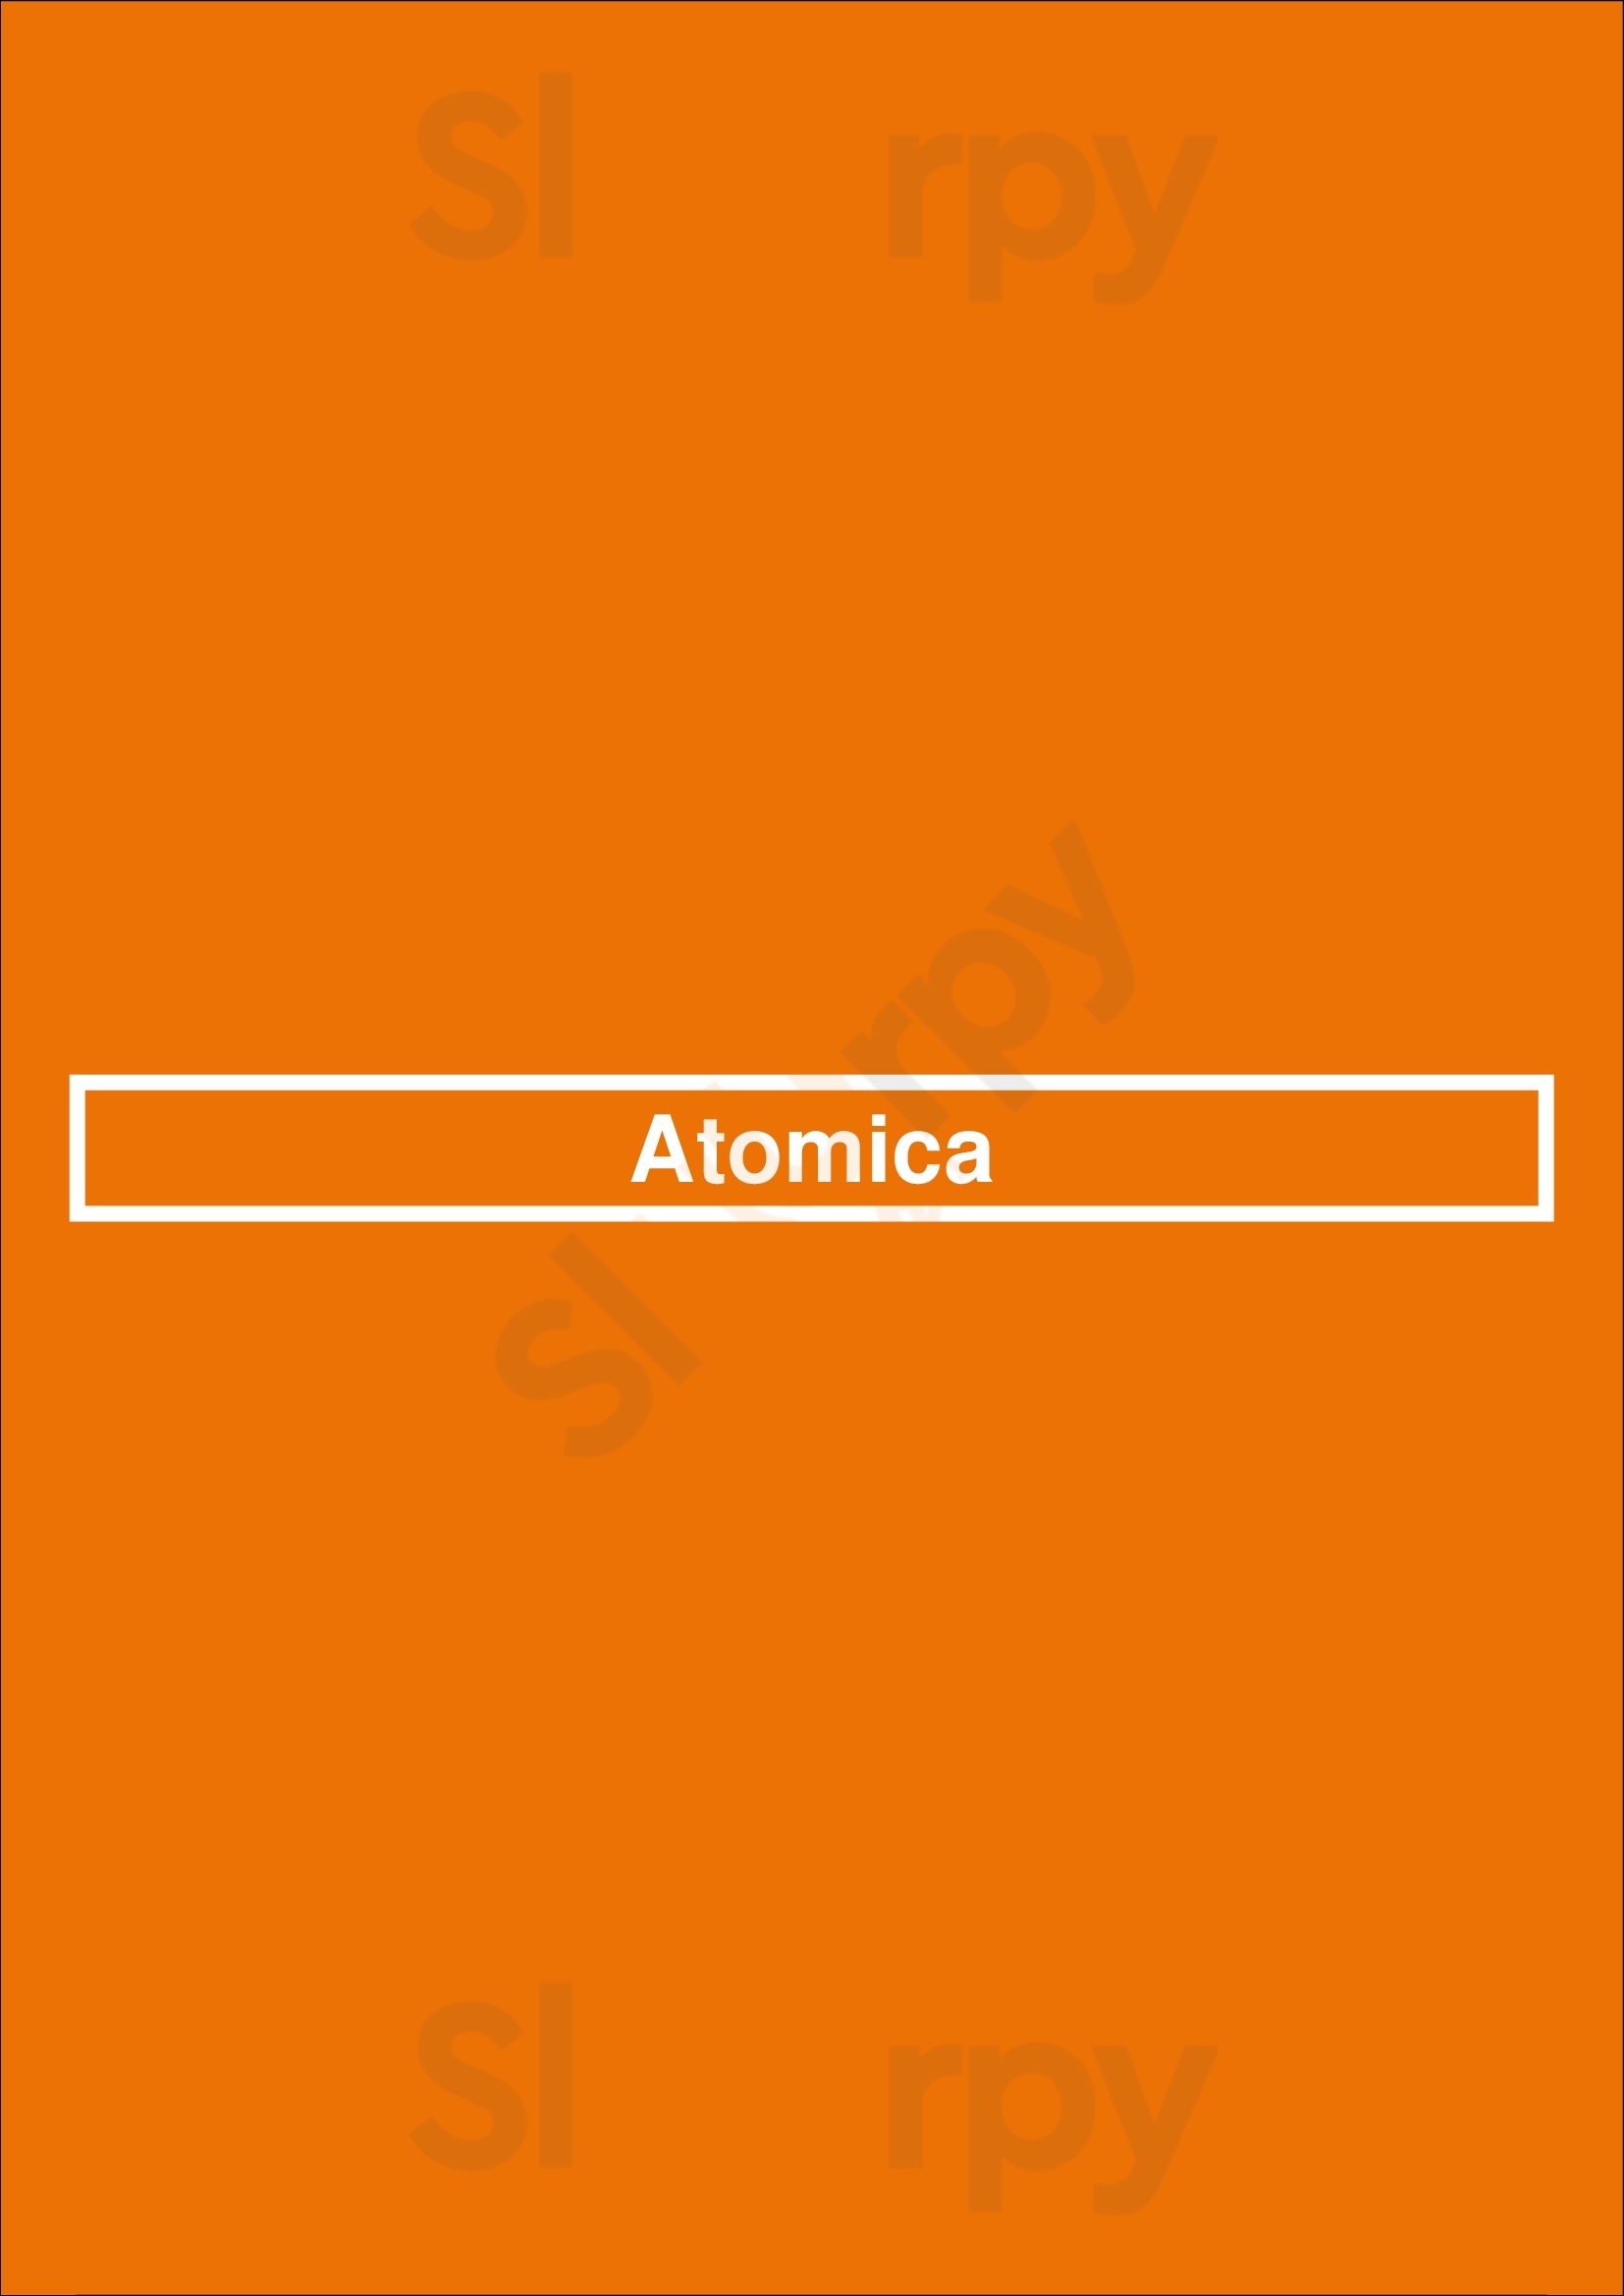 Atomica Kingston Menu - 1